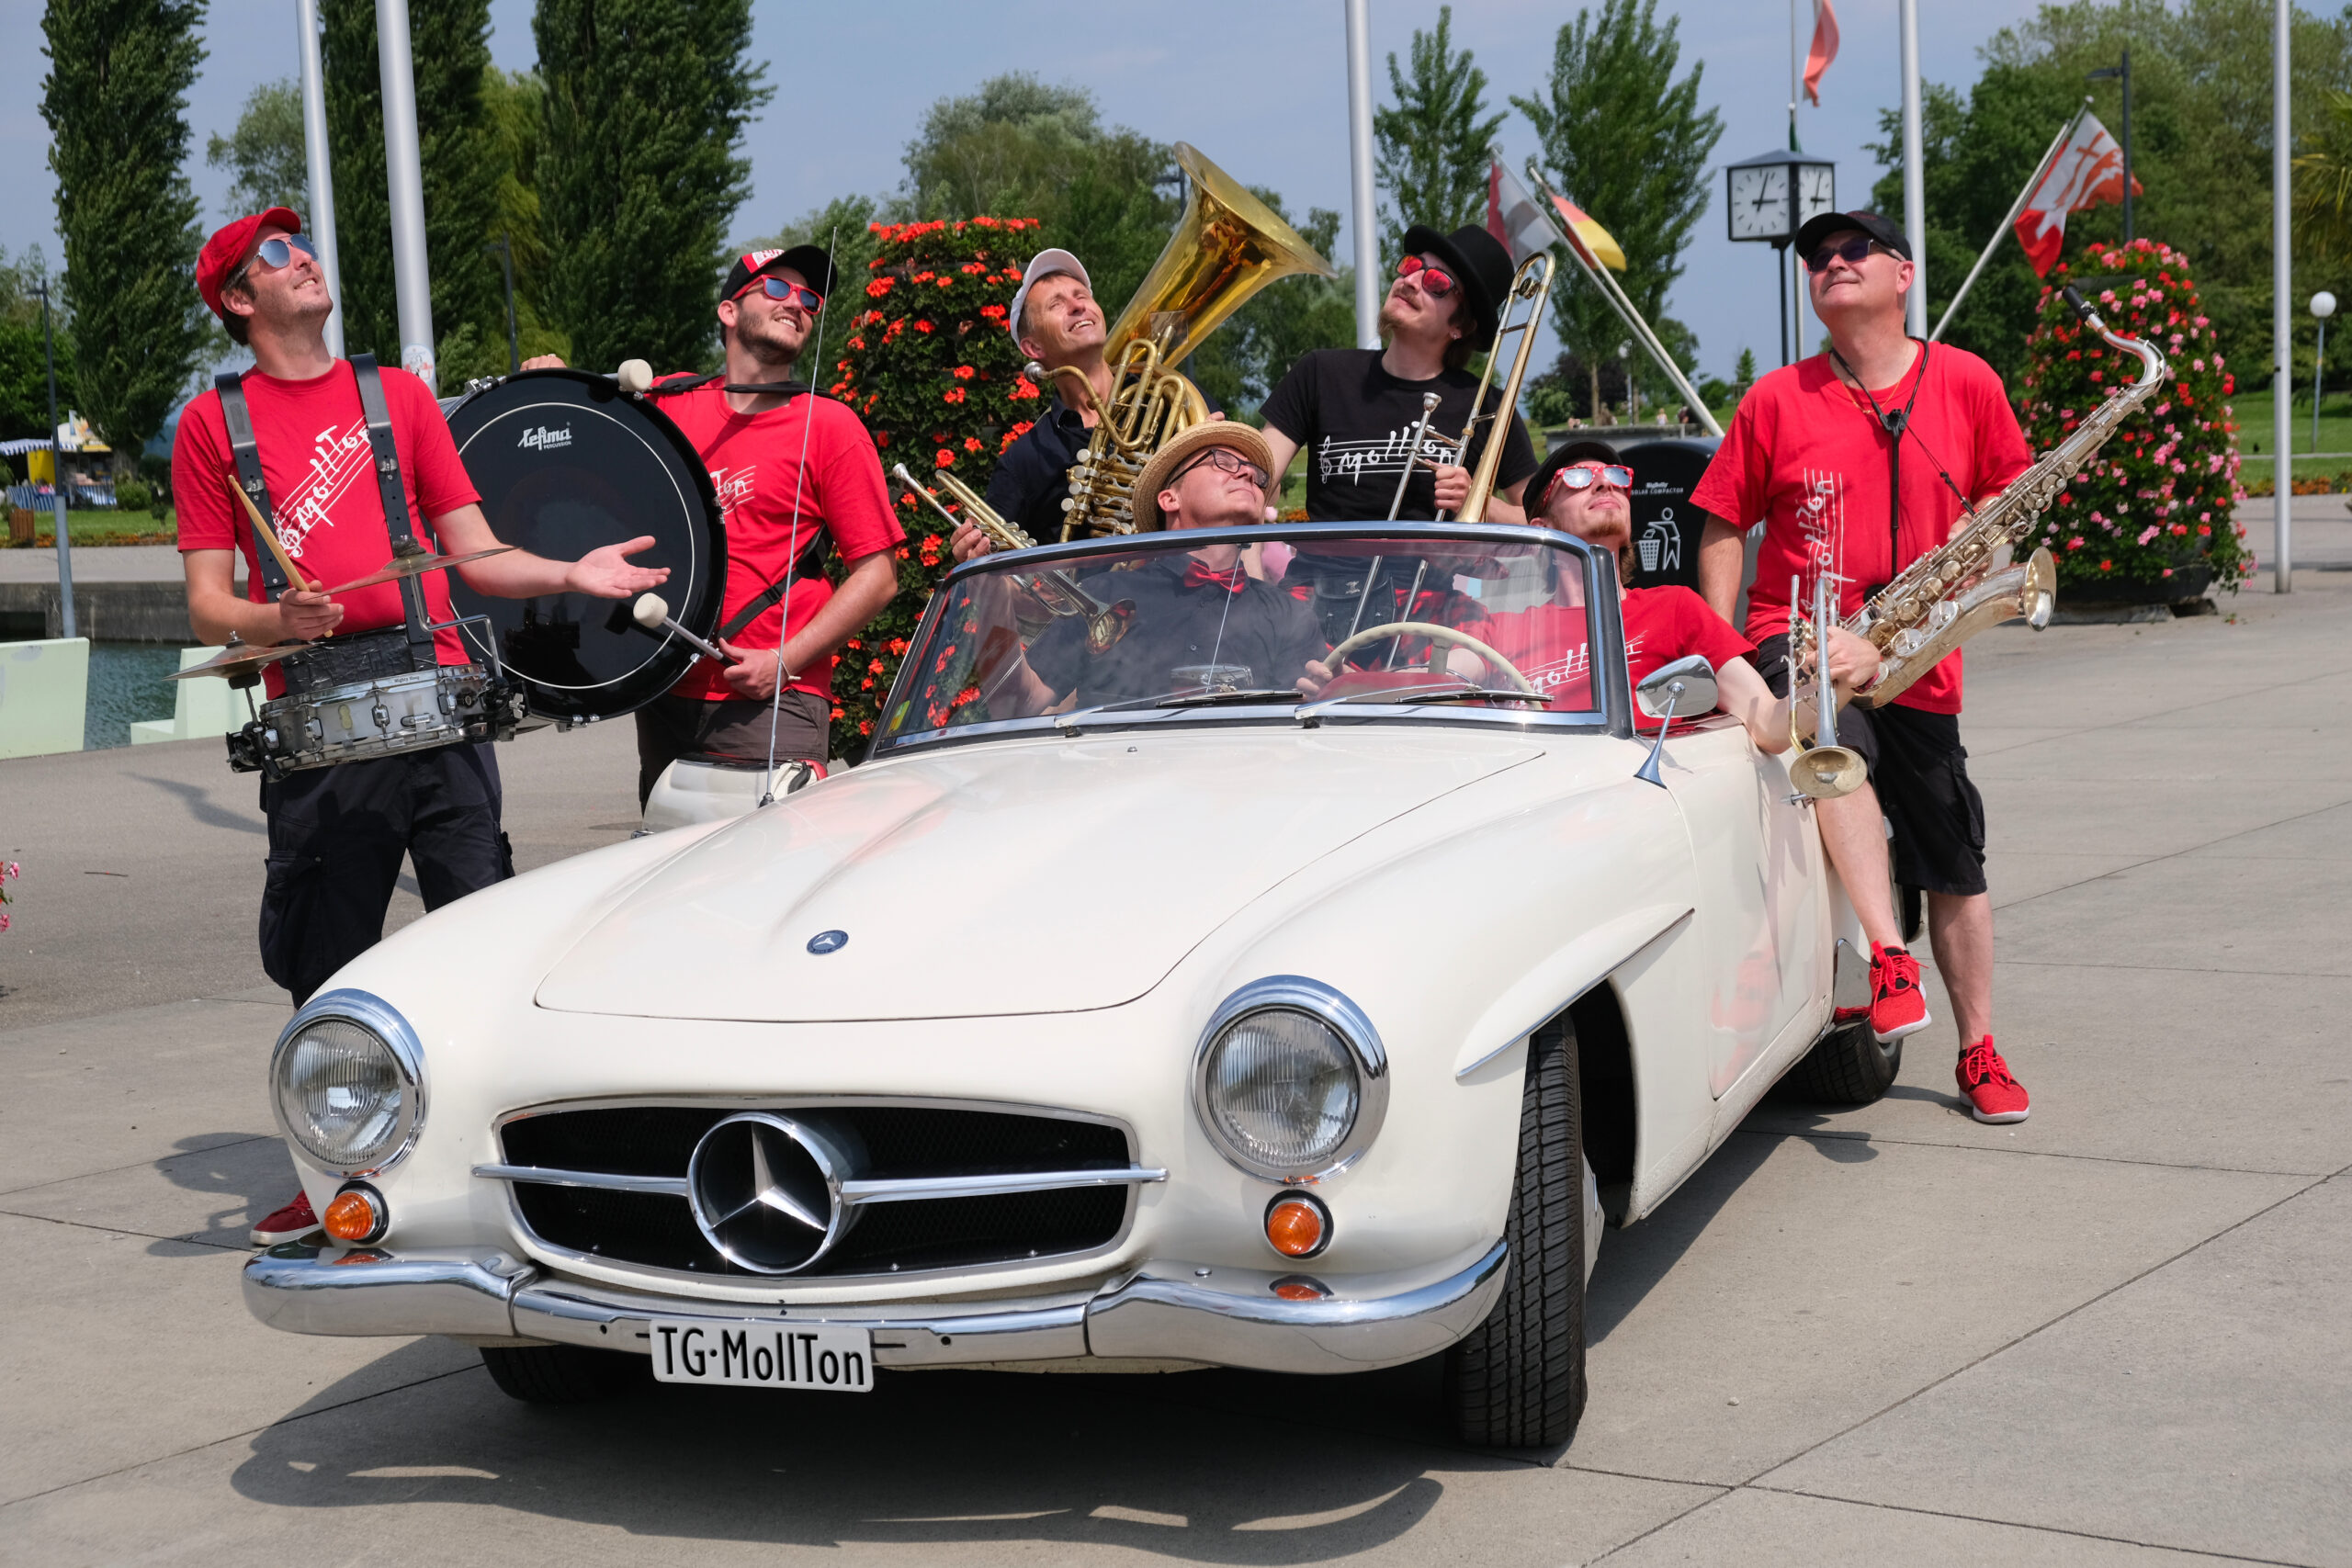 Gruppenfoto mit einem schönen Mercedes